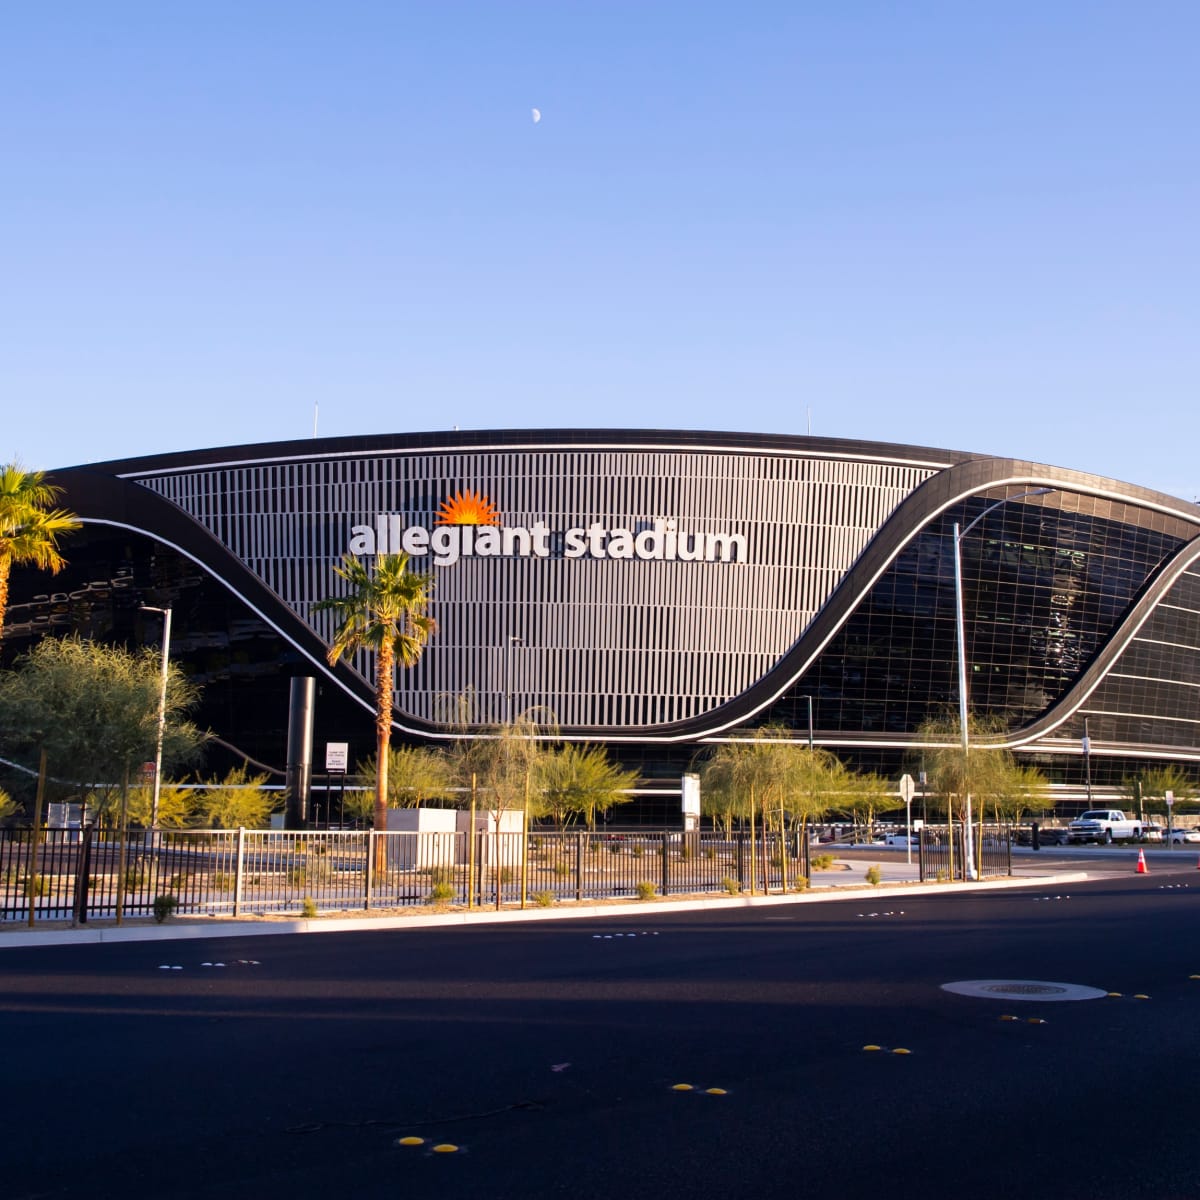 Las Vegas to Host Super Bowl LVIII in 2024 - AllOnGeorgia